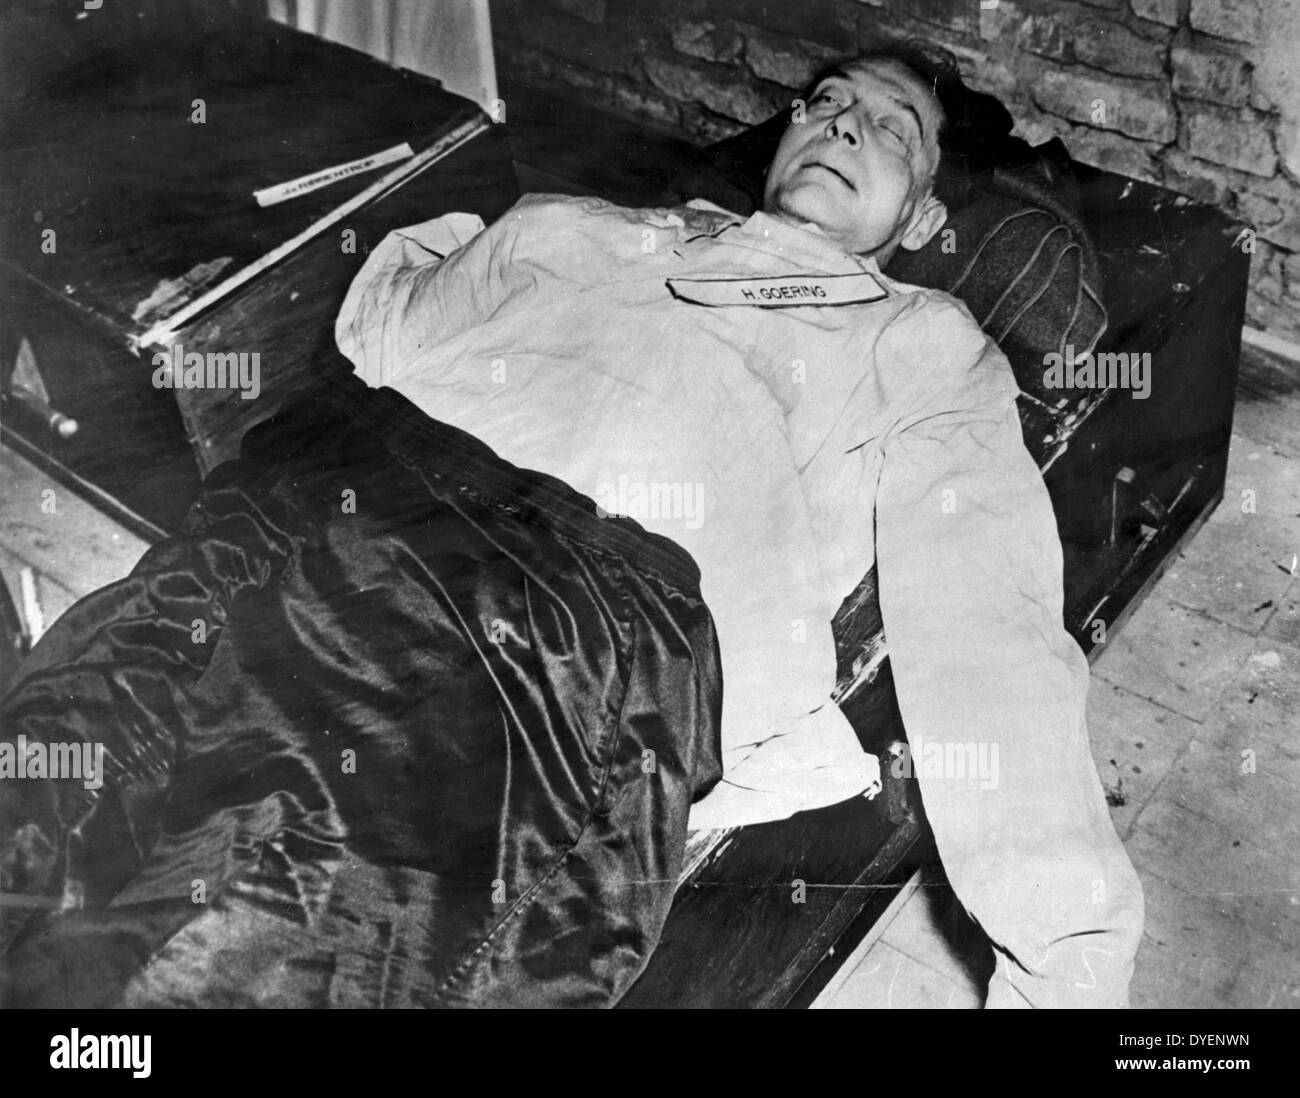 Mort d'Hermann Goering, leader nazi pendant la guerre et l'armée de l'air commandant qui s'est suicidé pendant le procès pour crimes de guerre à Nuremberg en 1946 Banque D'Images